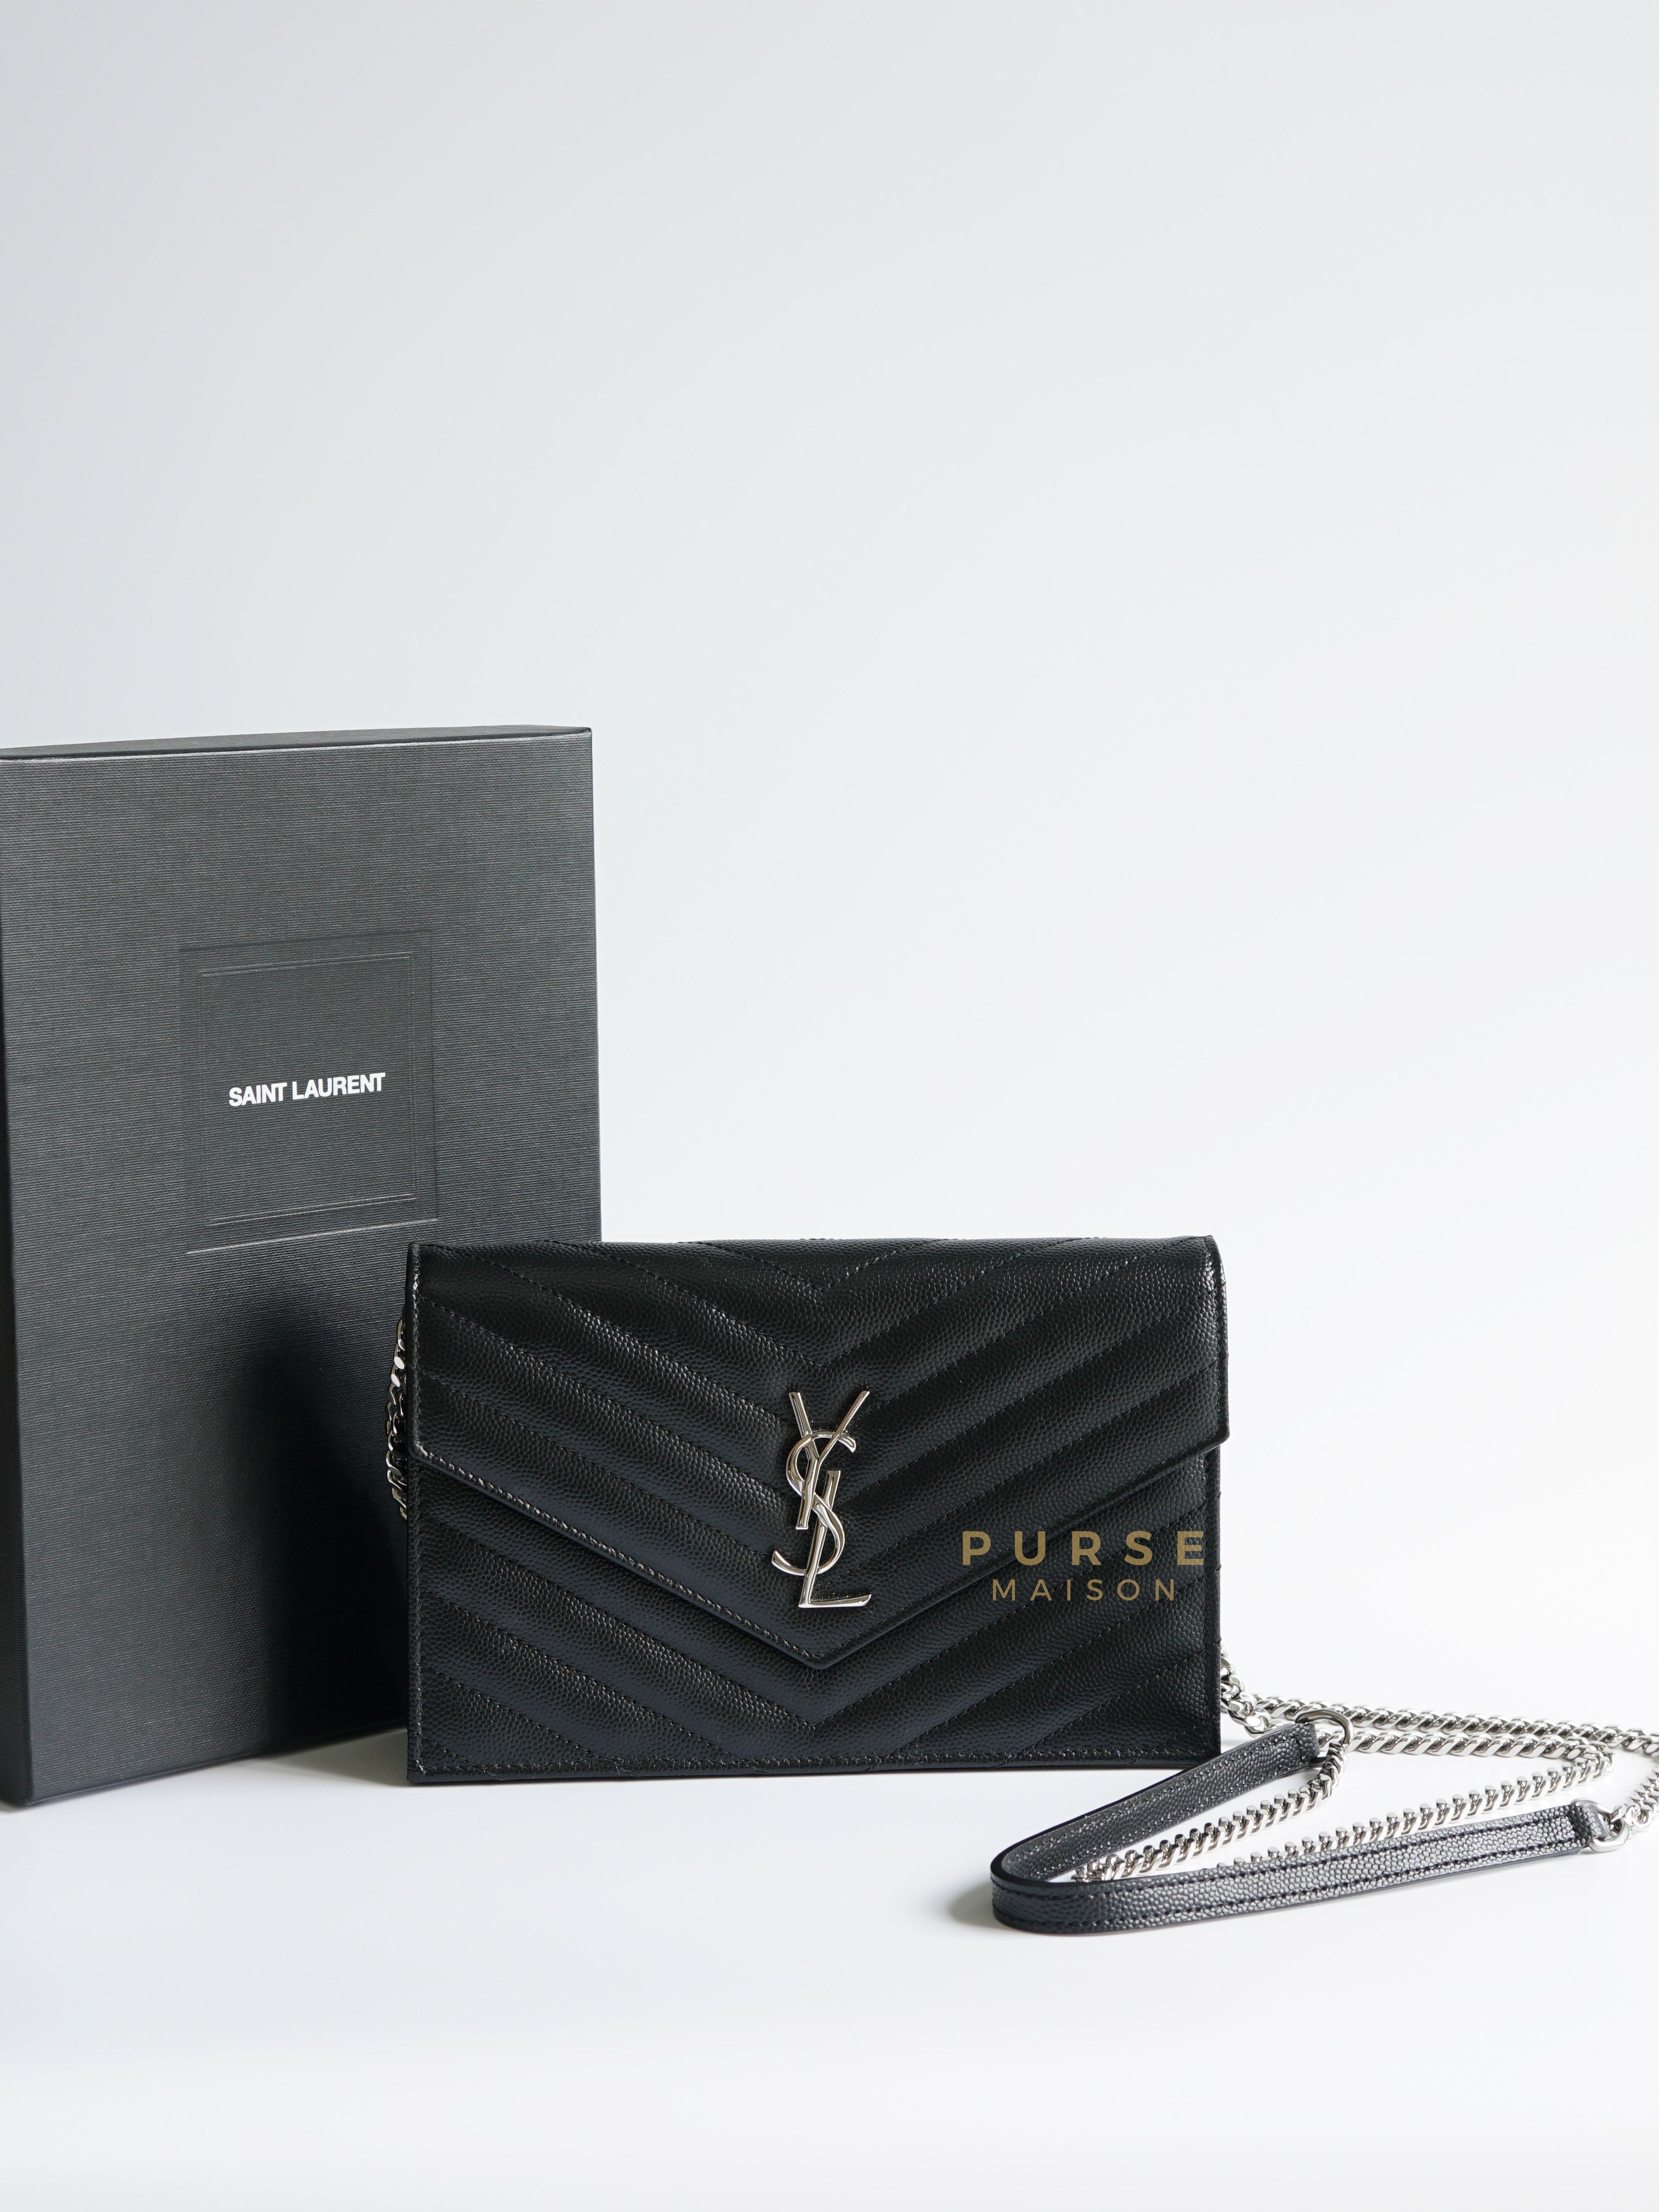 Yves Saint Laurent Bags & Clothing Online Australia | YSL | Parlour X